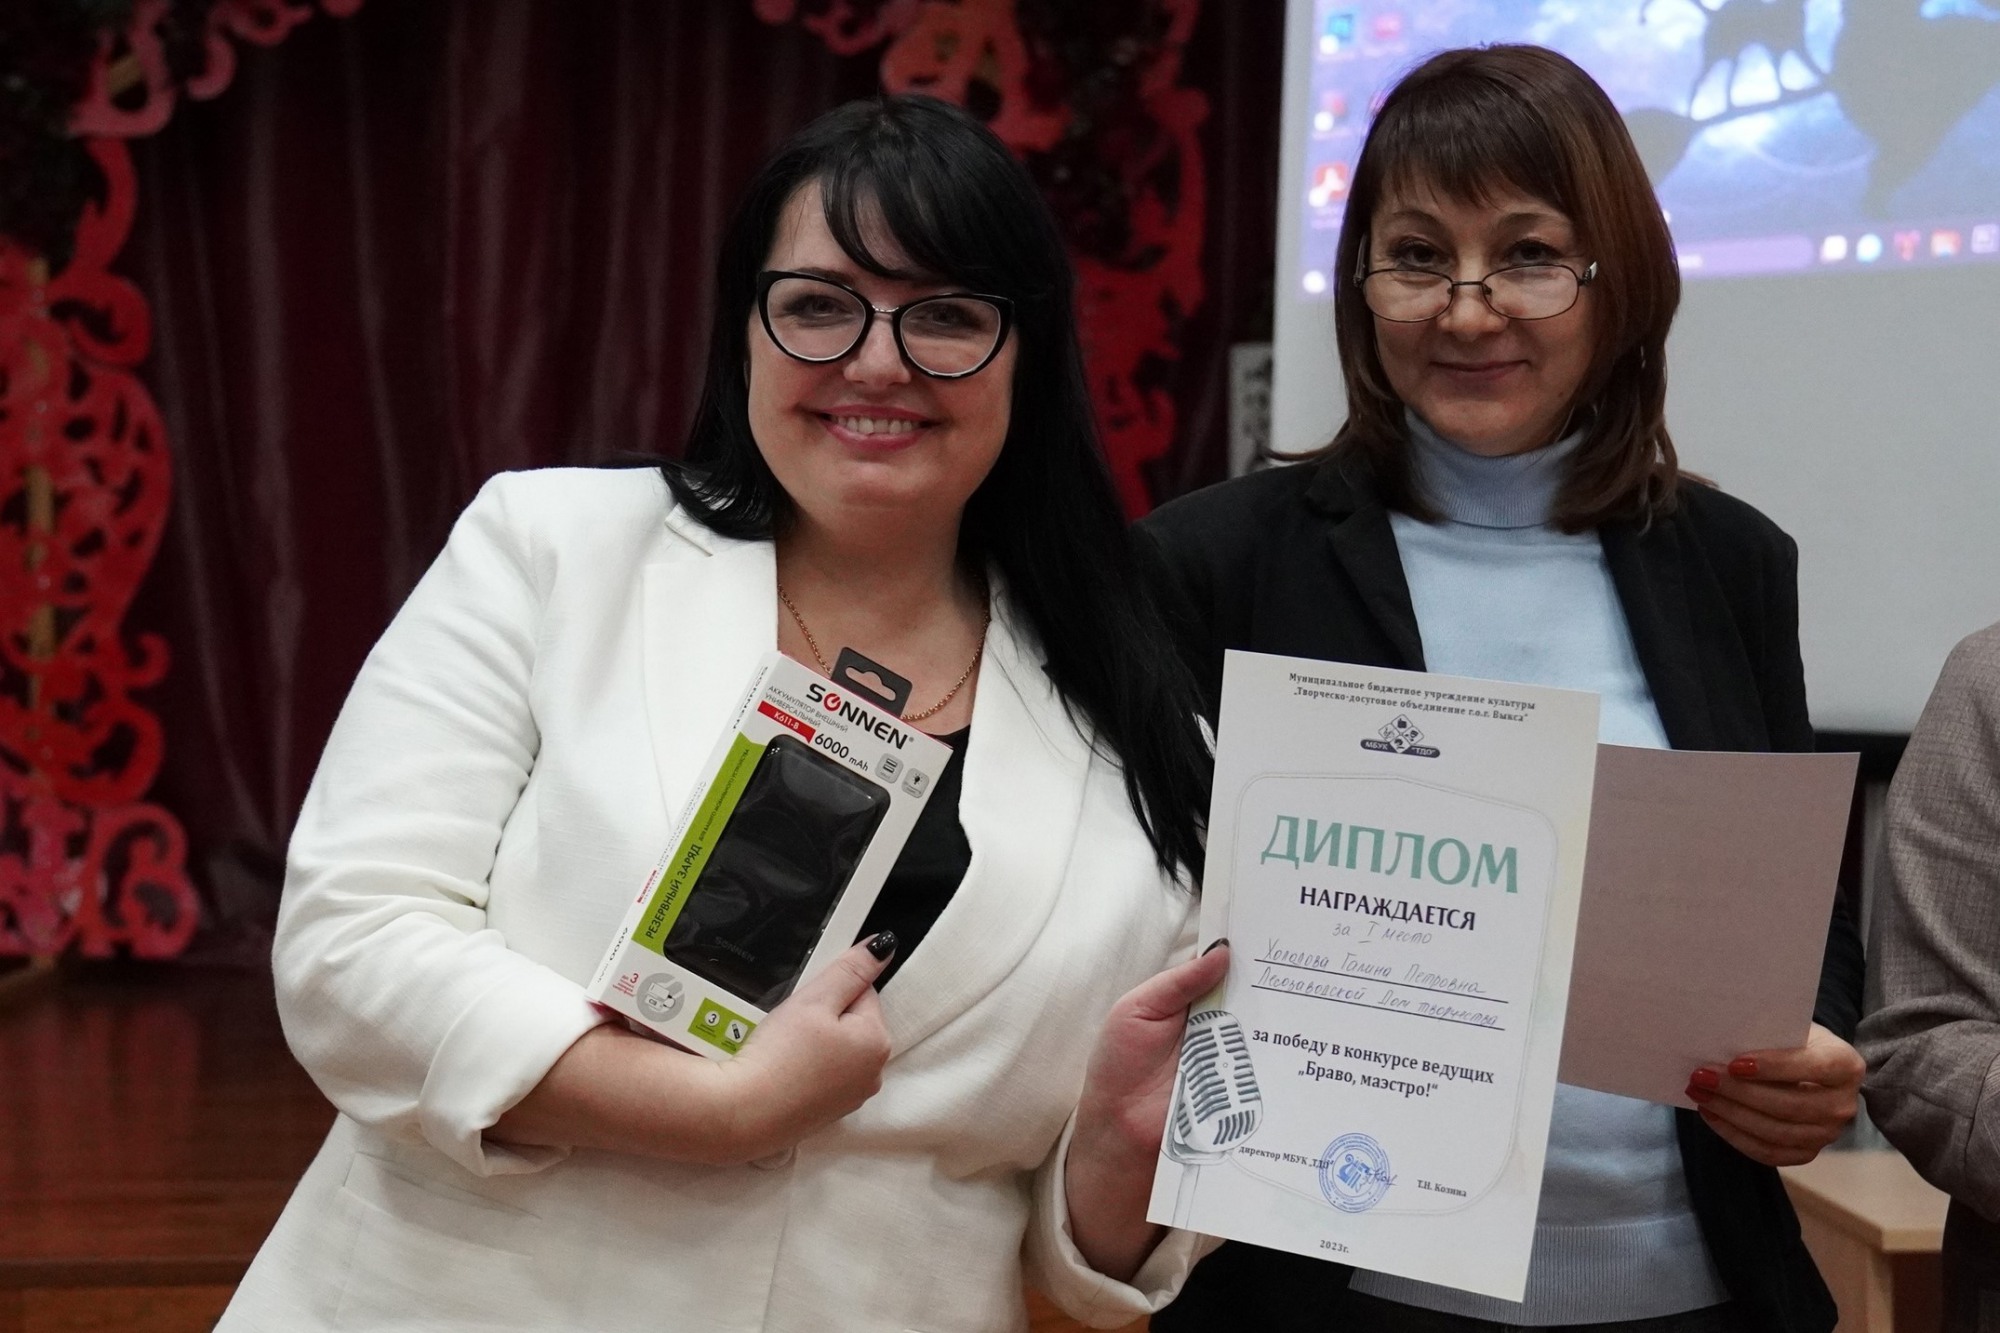 Галину Холодову и Анастасию Седунову признали лучшими ведущими игровых программ